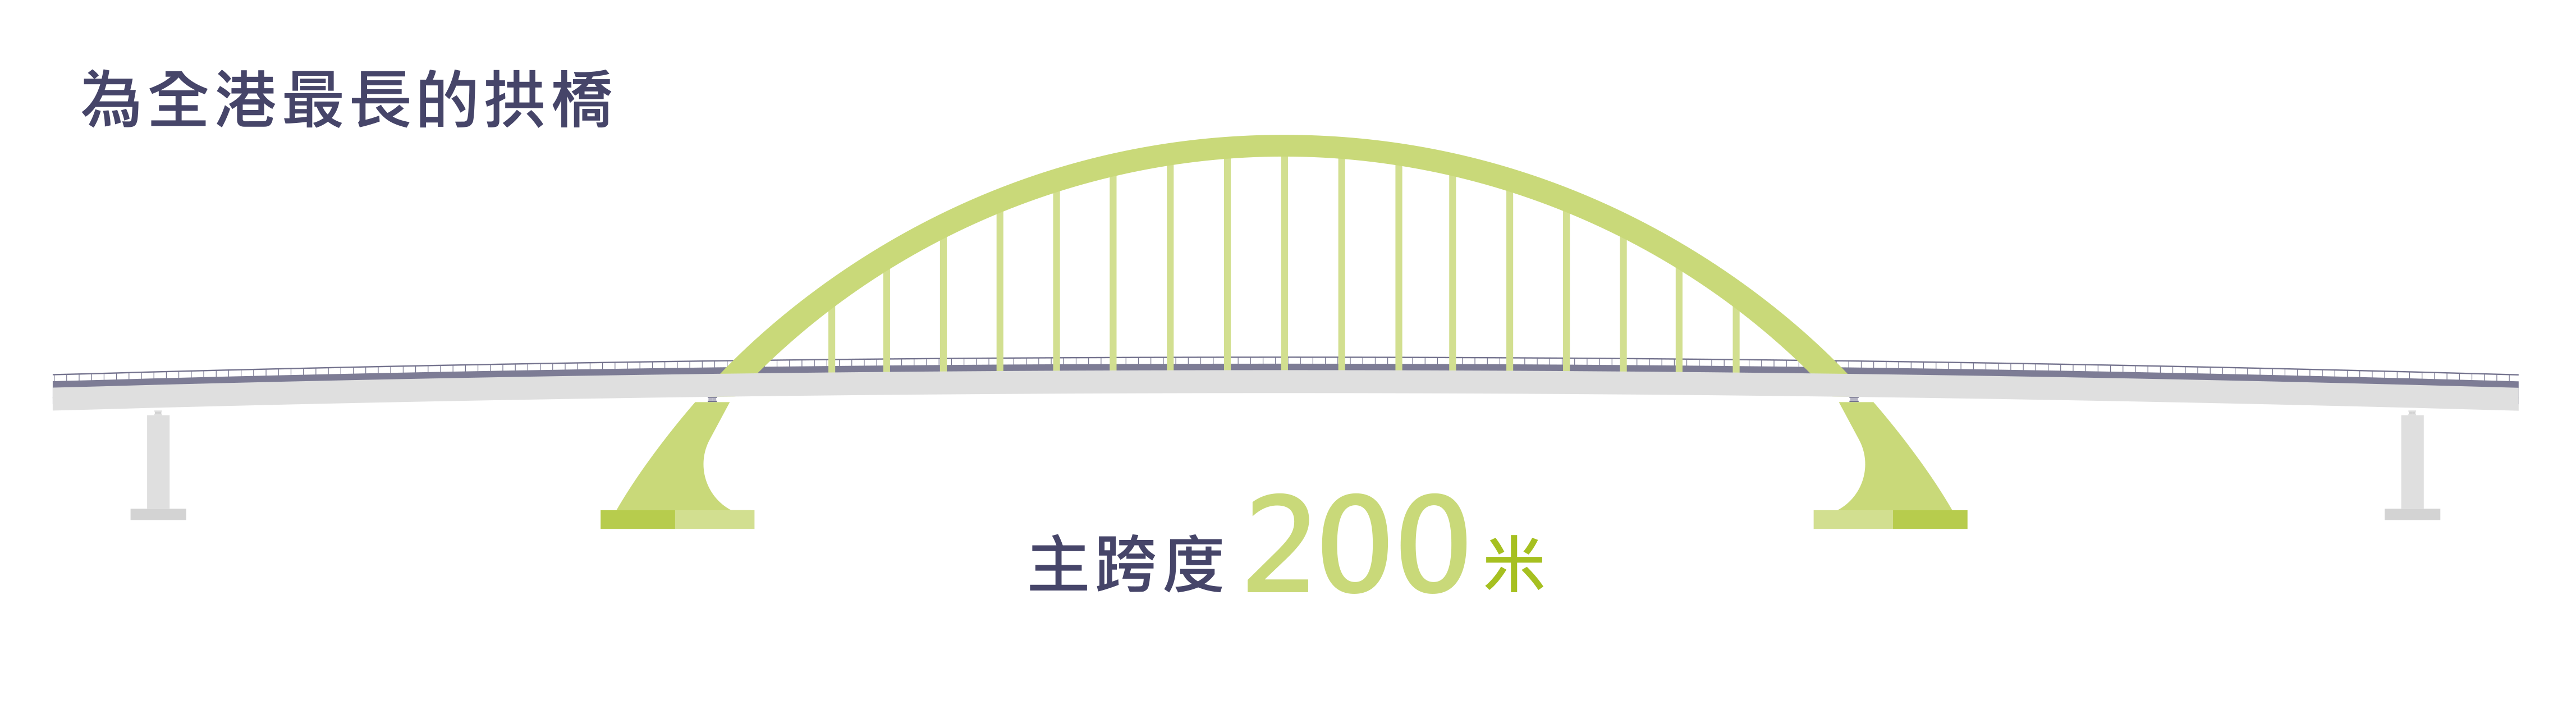 為全港最長的拱橋，主跨度200米